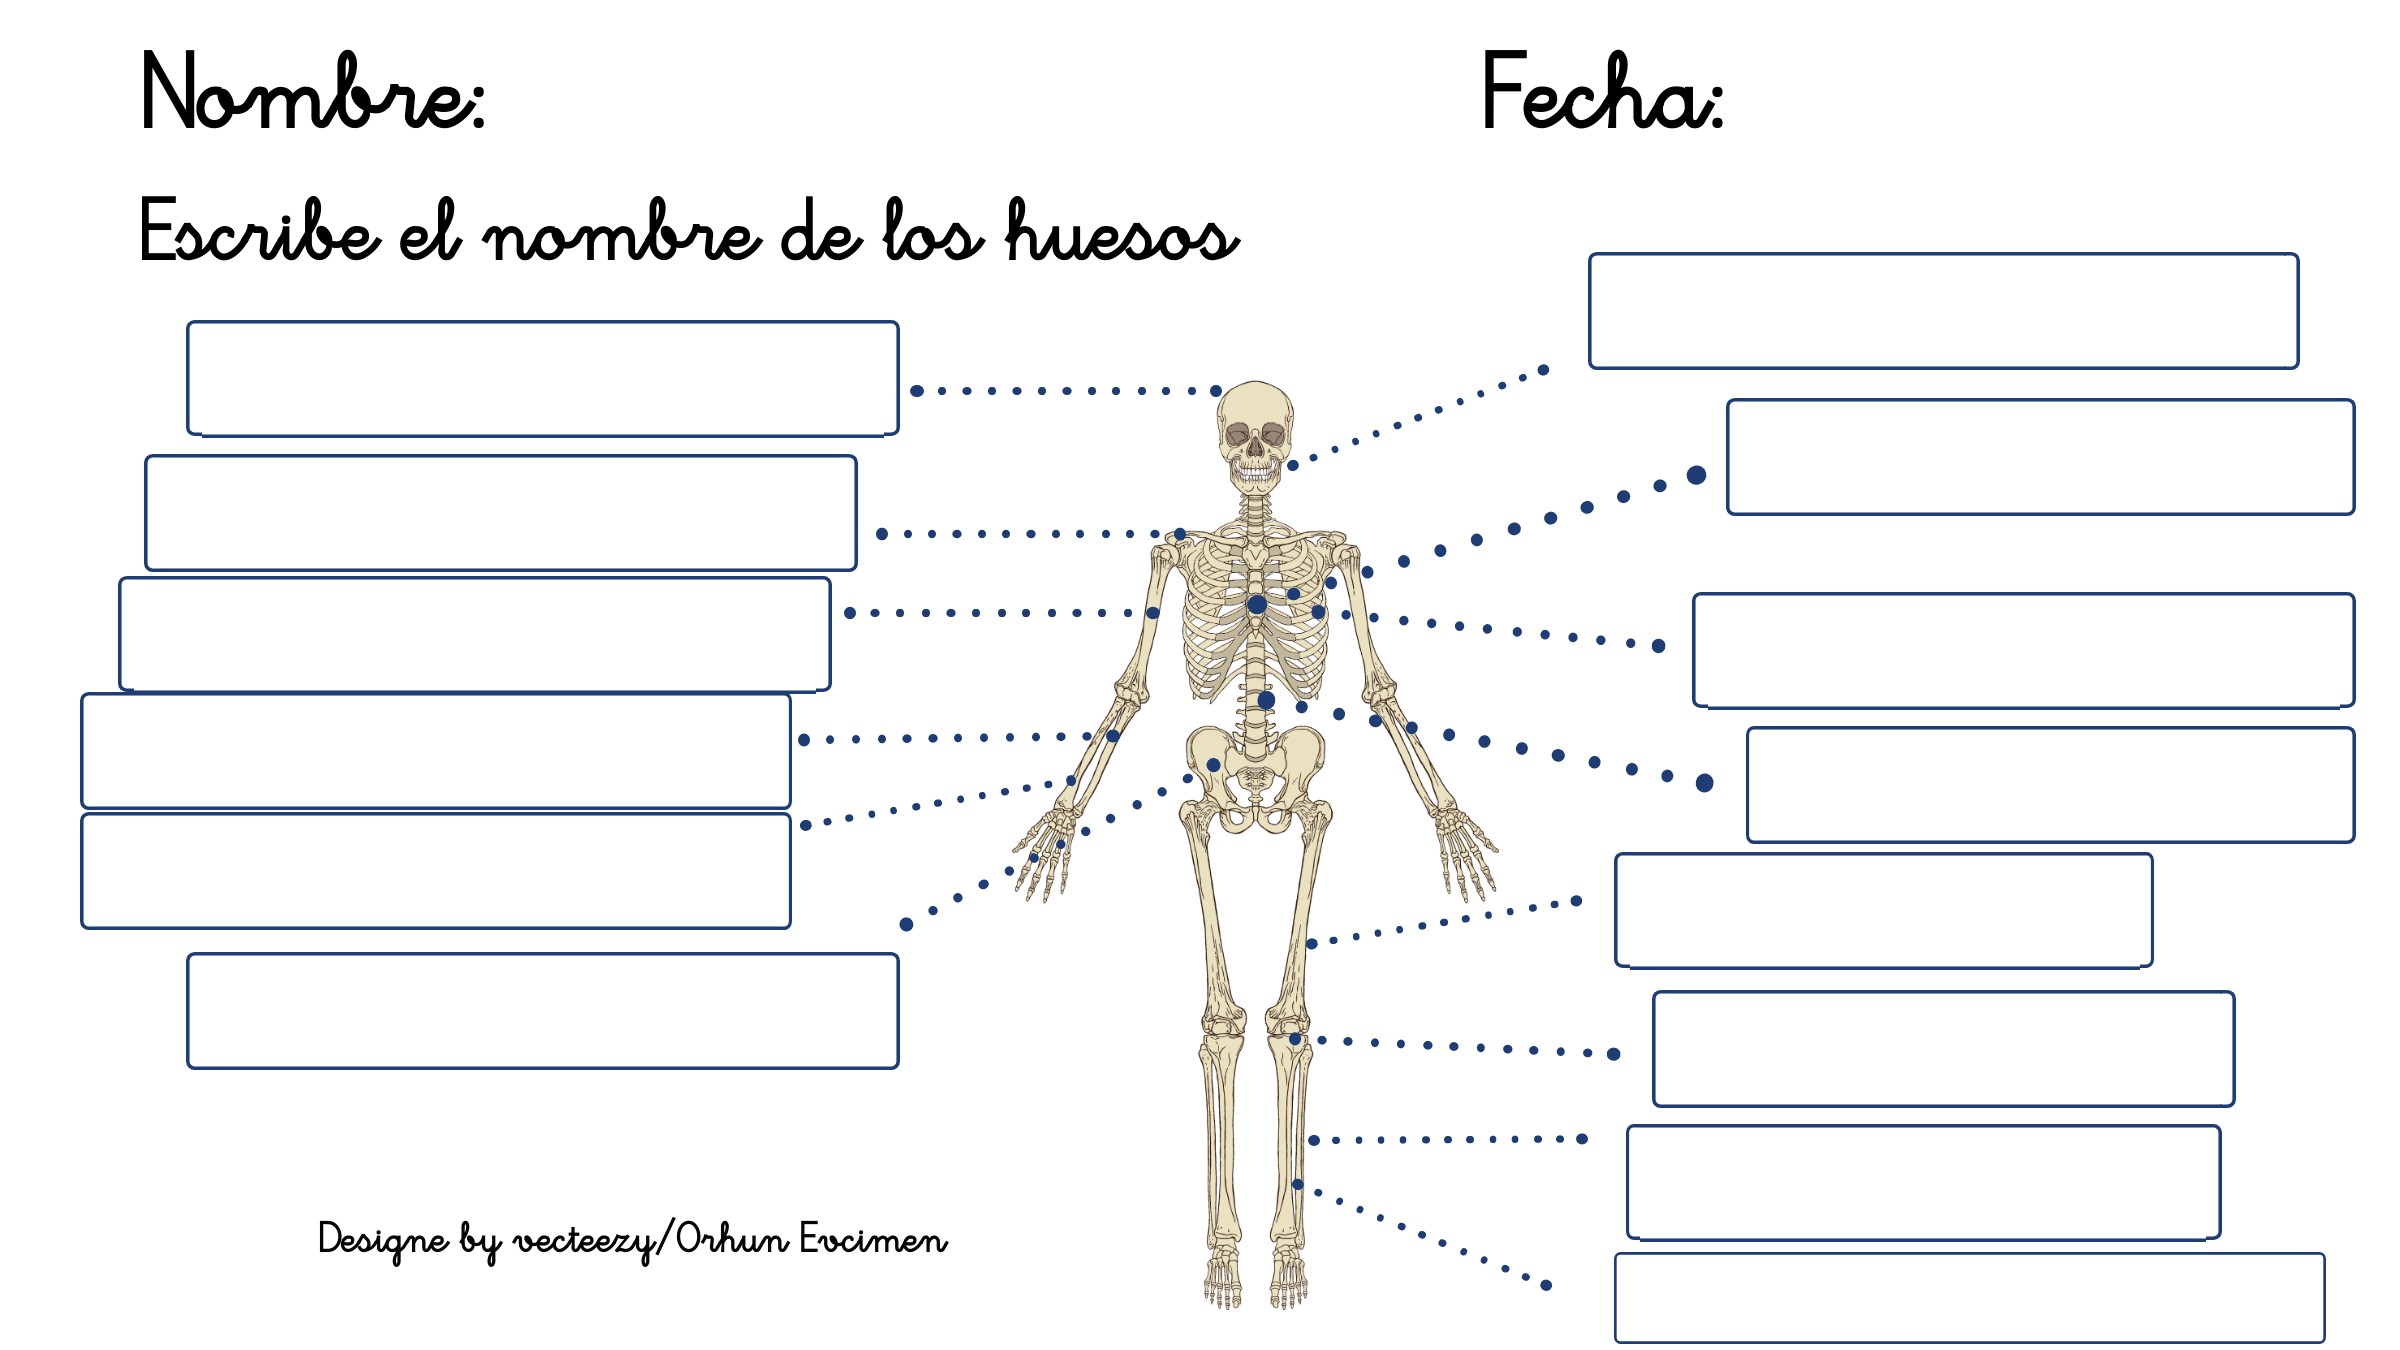 Imagen de un esqueleto, hay que escribir el nombre de los huesos donde corresponda.